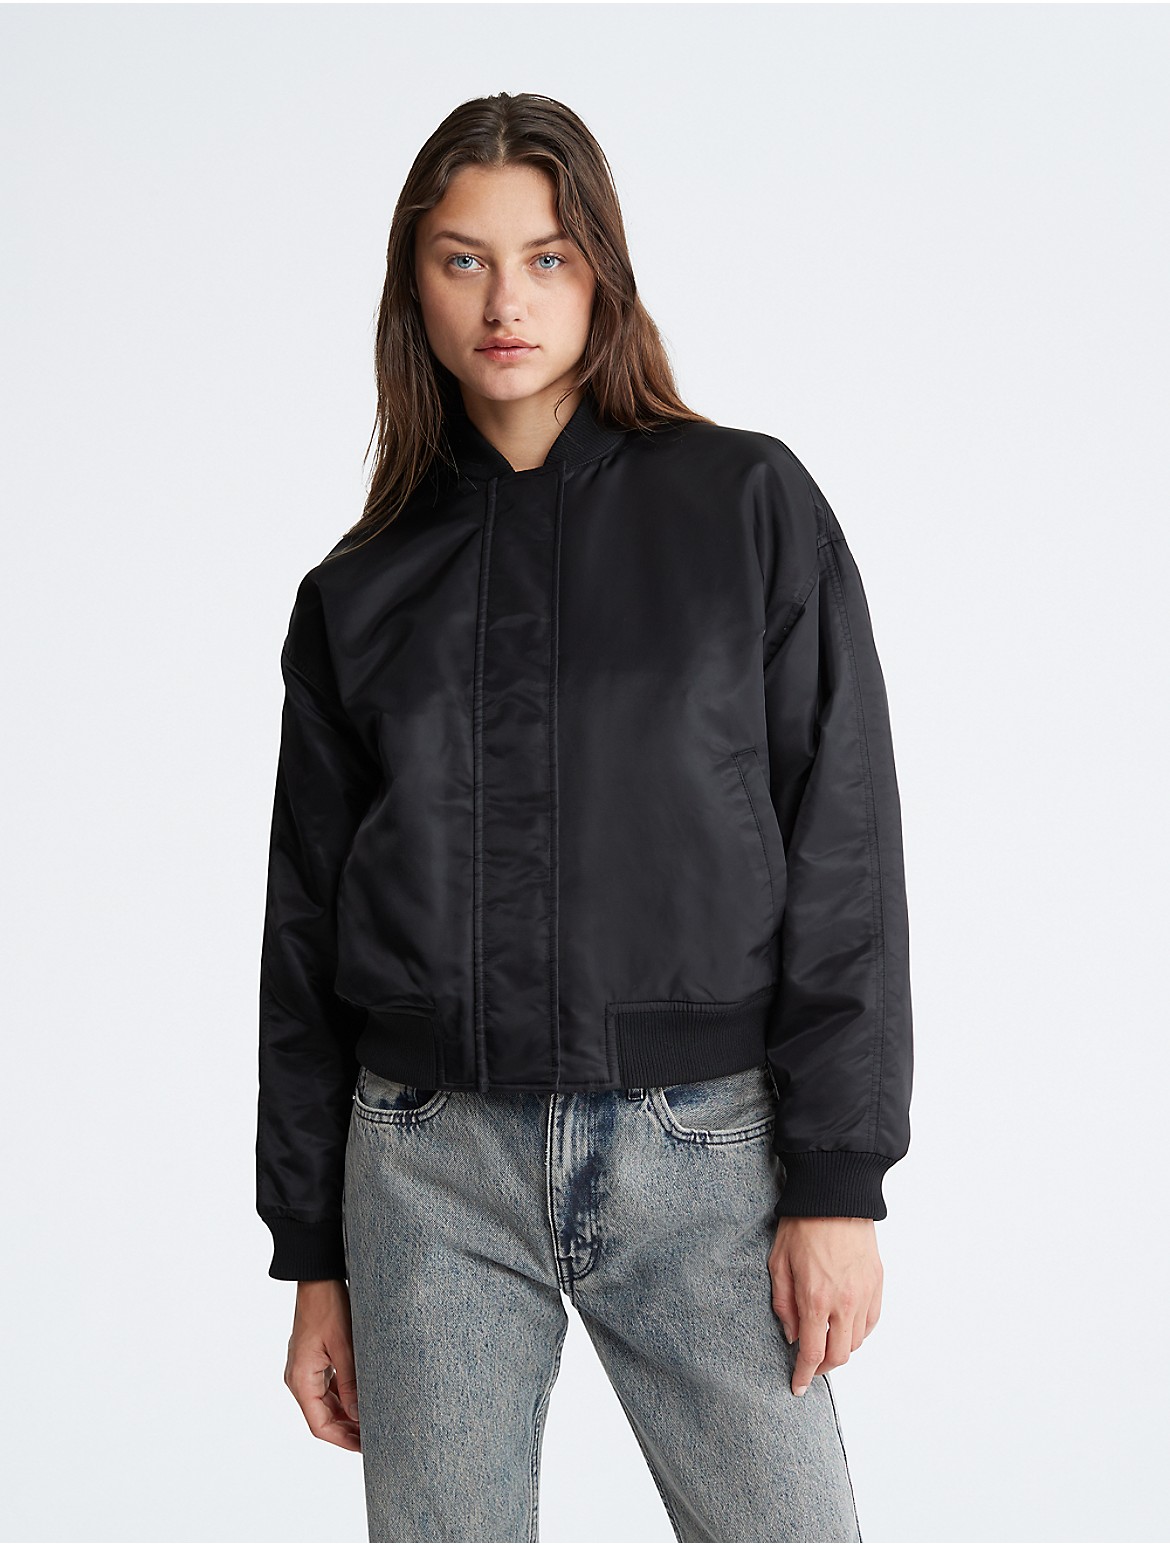 Calvin Klein Women's Nylon Bomber Jacket - Black - S